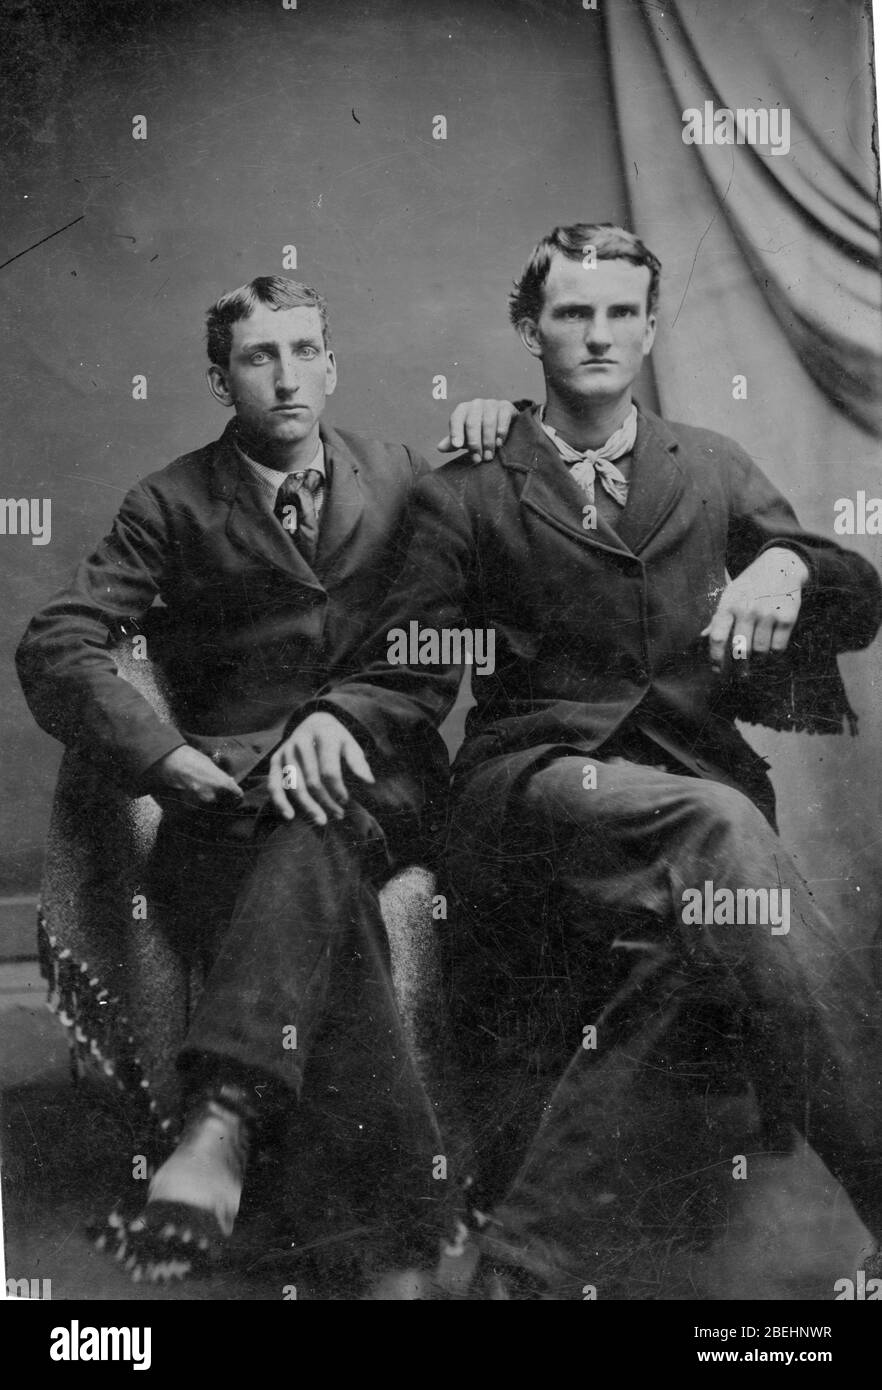 Zwei Männer, die in den 1860er Jahren nebeneinander in einem Fotostudio saßen. Sie sind offensichtlich nah beieinander und hübsch gekleidet. Die Krawatte eines Mannes ist schlecht gebunden, während der andere ein Halstuch um den Hals hat. Sind sie ein liebevolles Paar, Brüder? Freunde? Schwul? Um alle meine Bilder zu sehen, Suche Prestor Vintage Gay Stockfoto